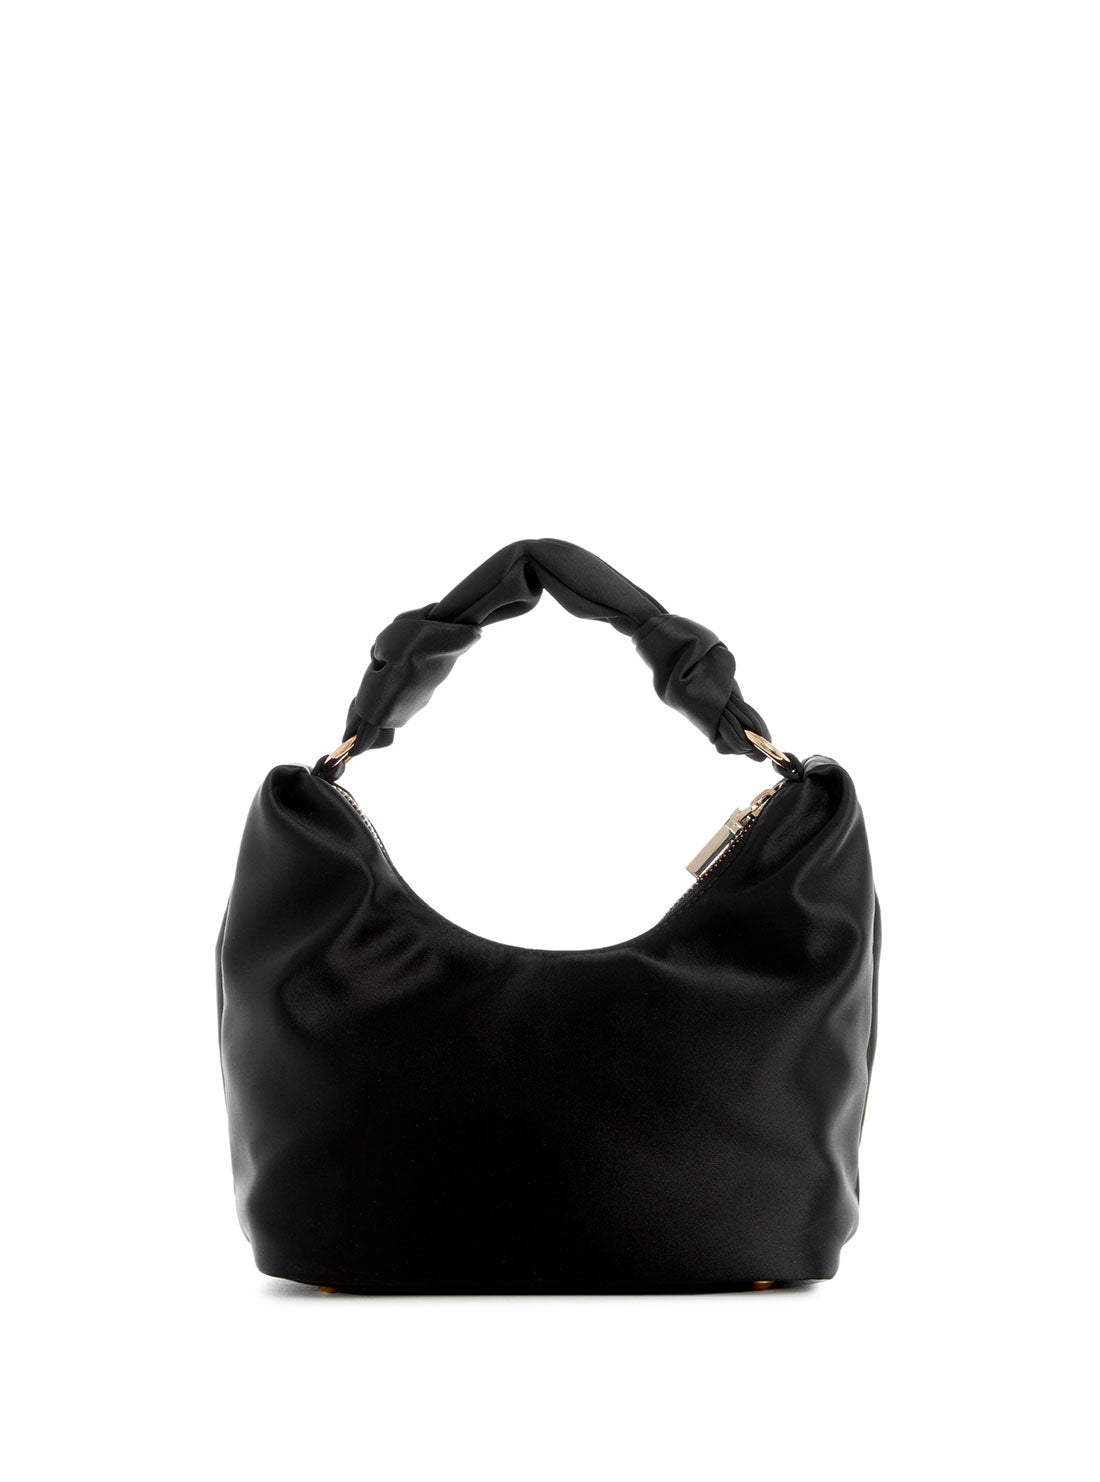 GUESS Women's Black Velina Hobo Bag EG876502 Back View